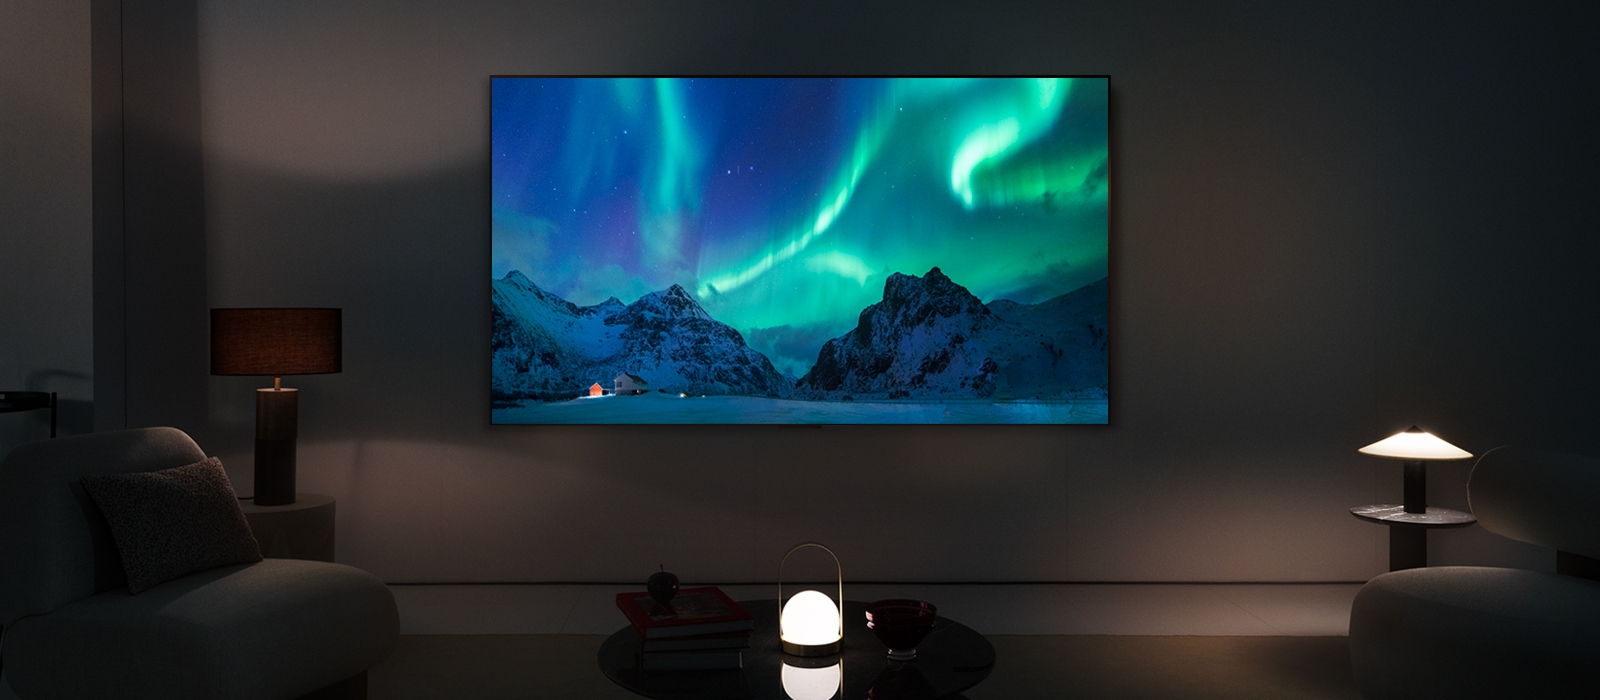 Téléviseur LG OLED TV dans un espace habitable moderne dans la nuit. L'image de l'aurore boréale est affichée avec les niveaux de luminosité idéaux.